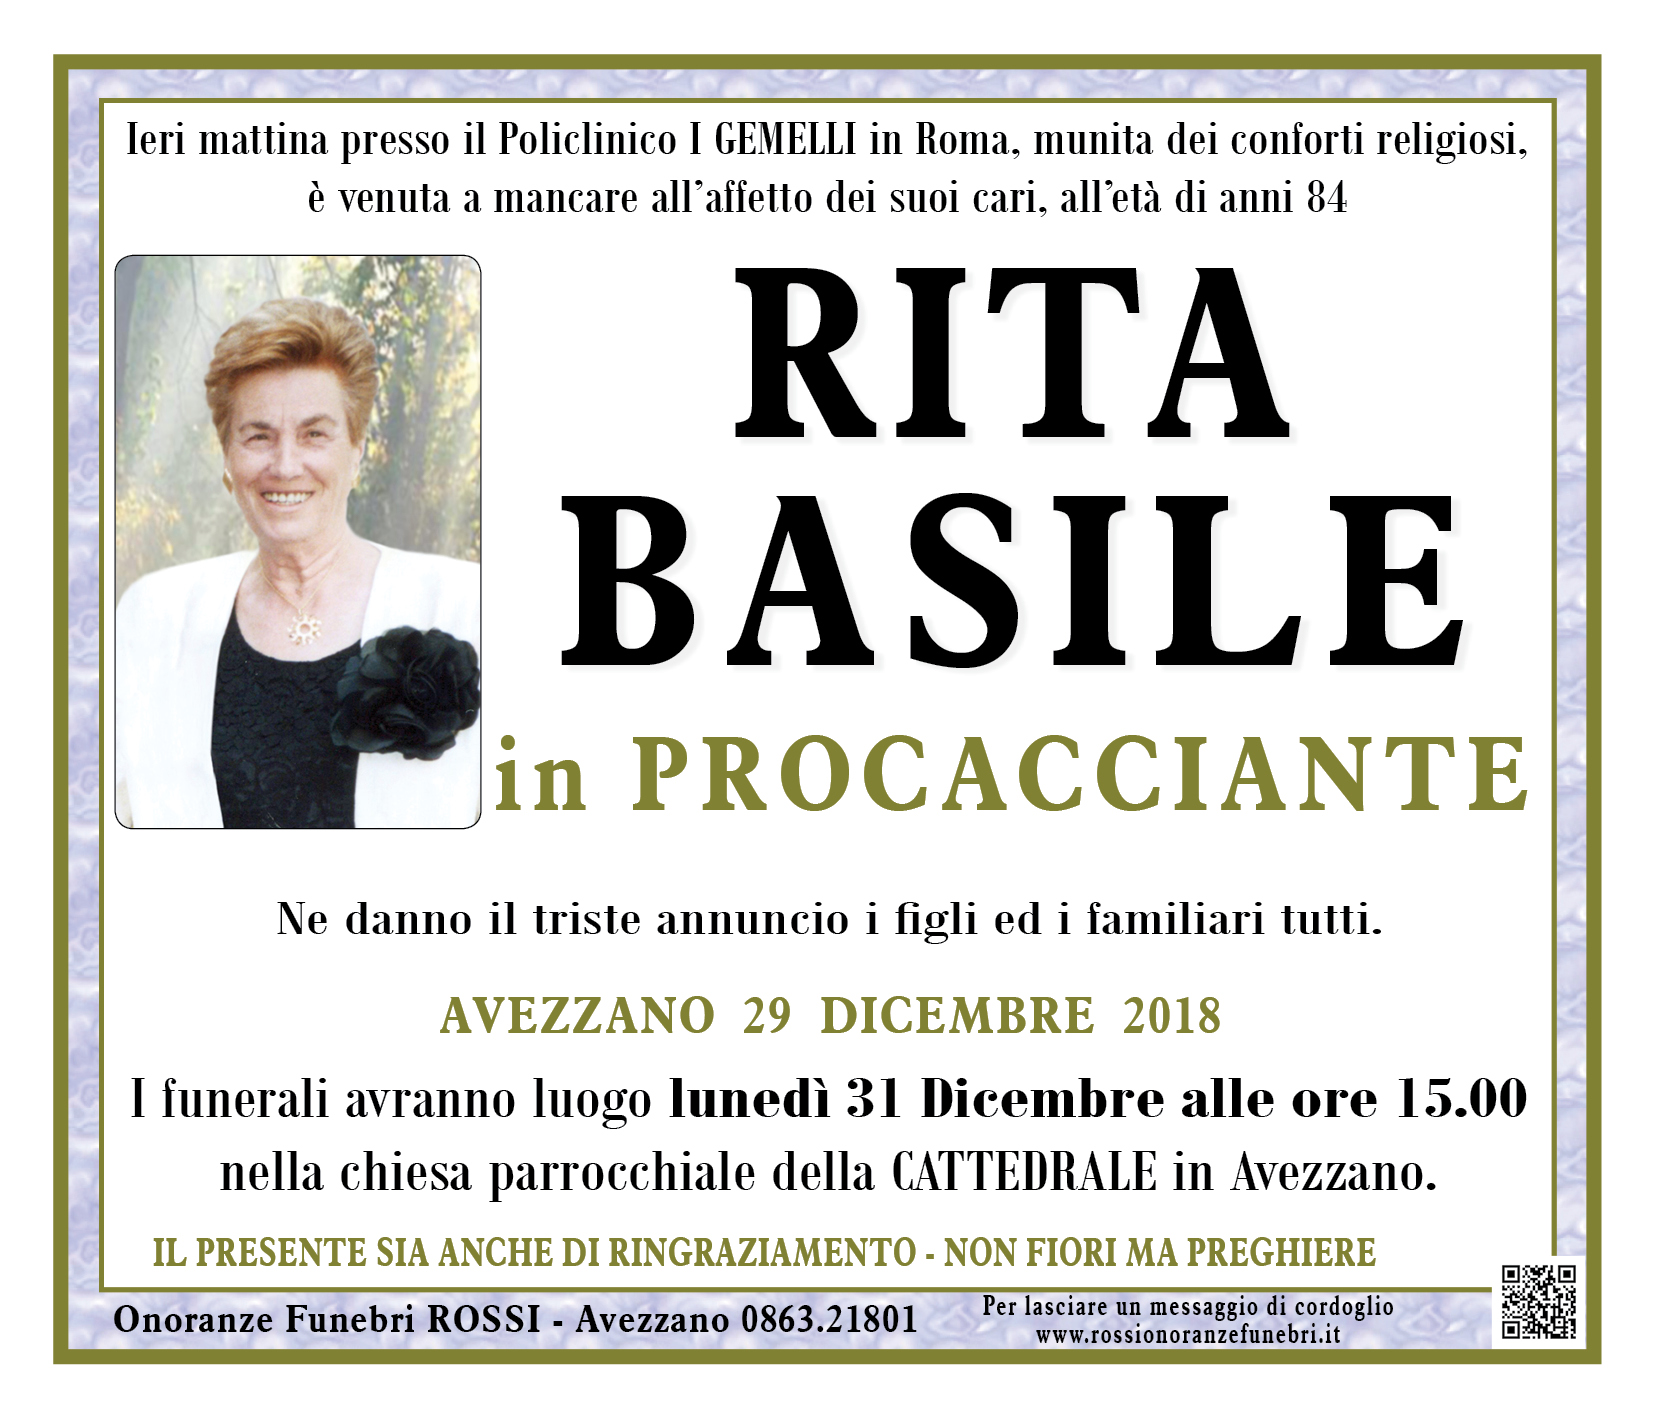 Rita Basile